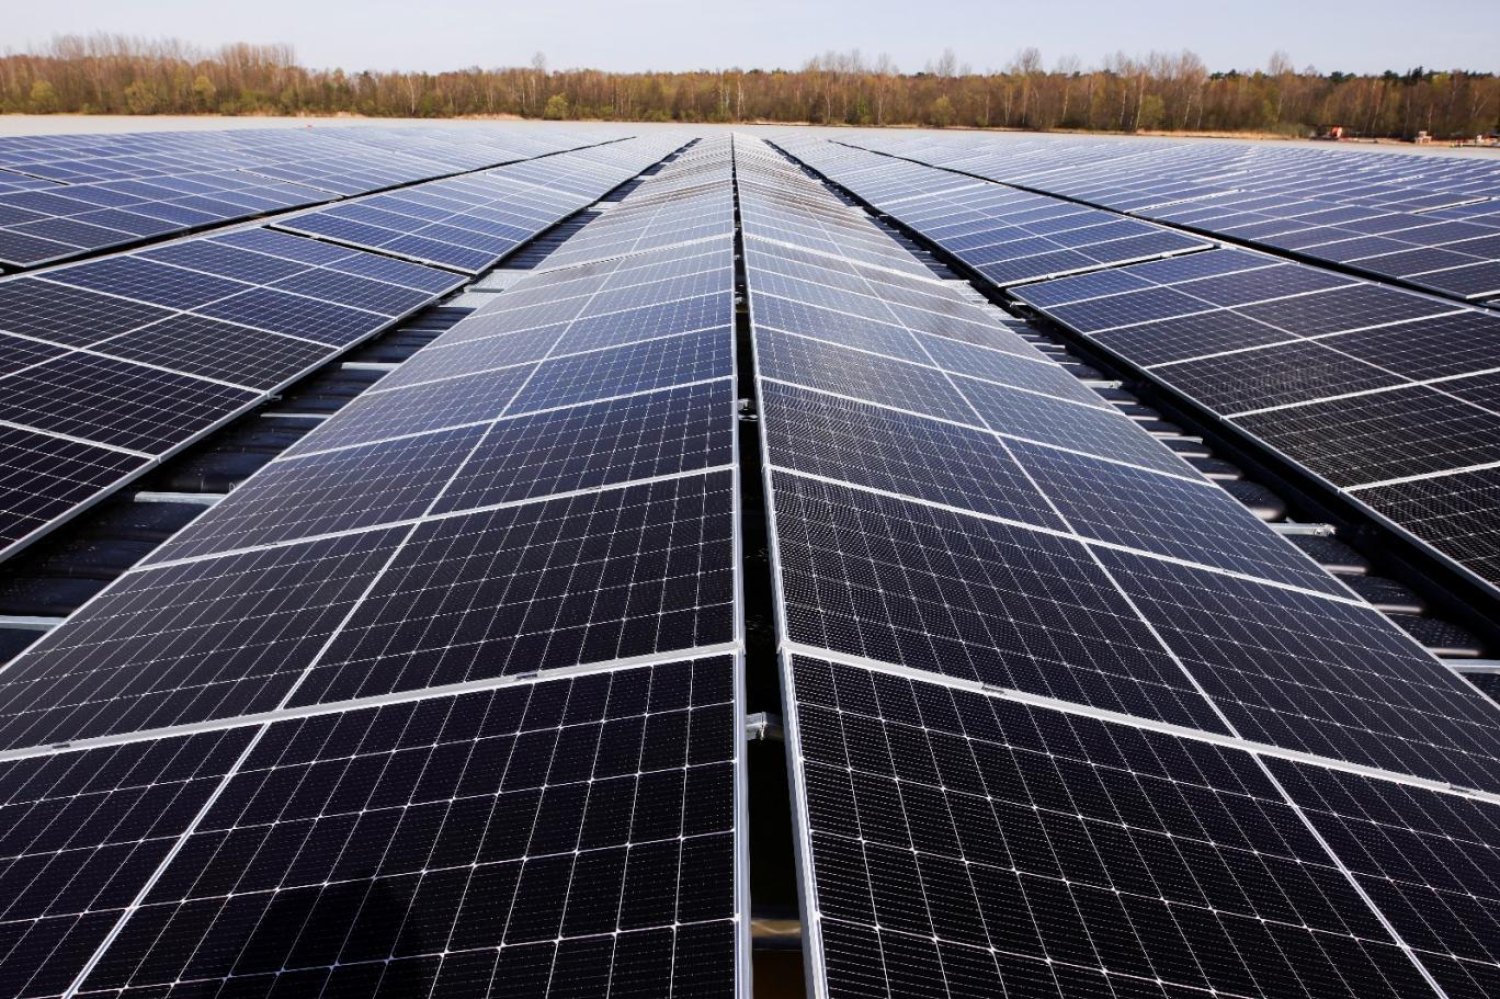 Bilim insanları, Güneş enerjisini daha verimli şekilde kullanmak için yeni yollar arıyor (Reuters)